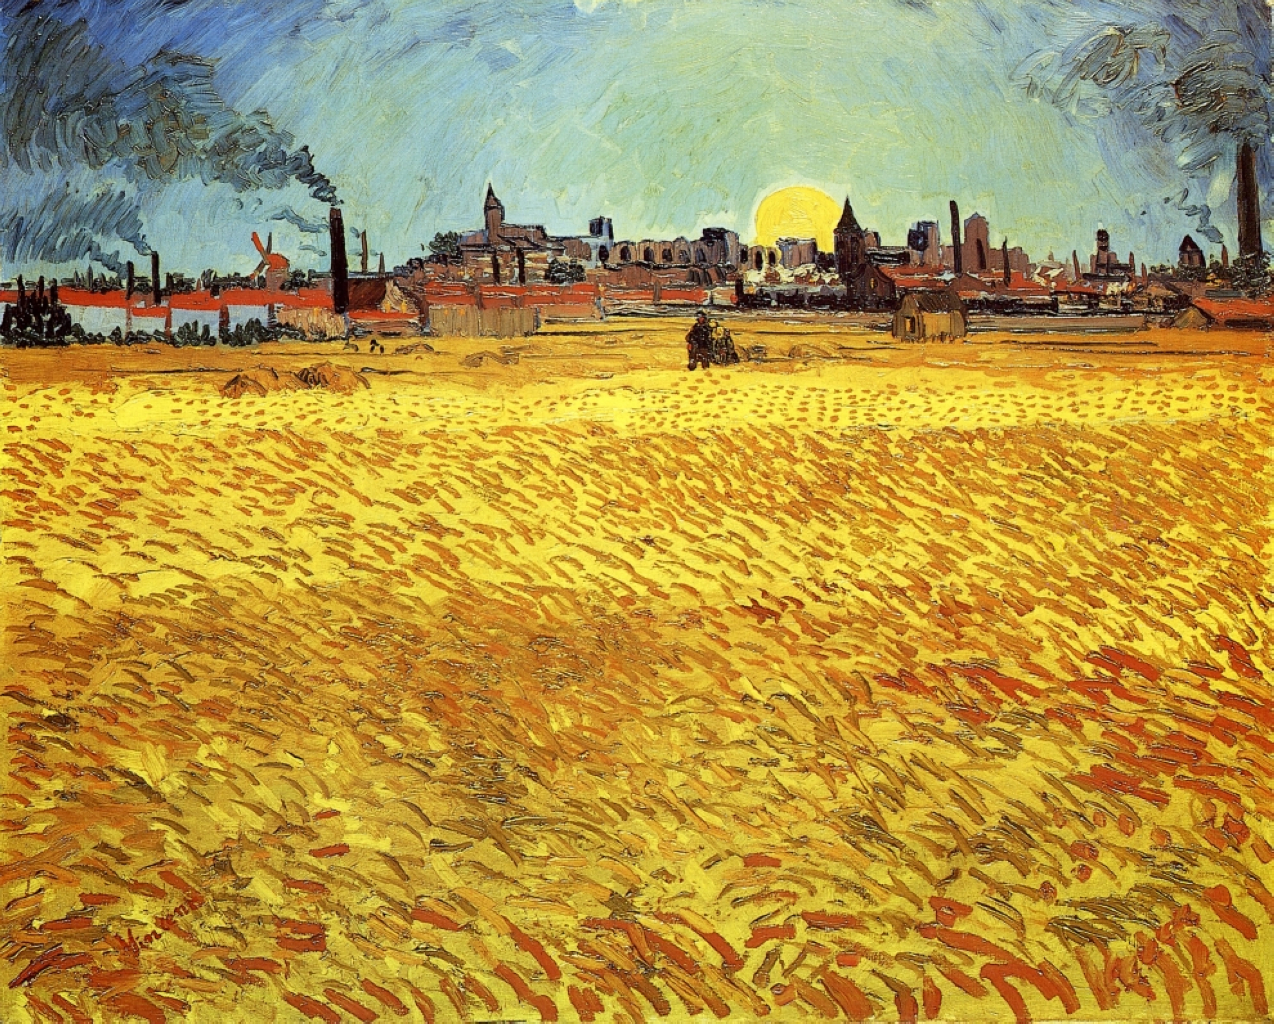 Serata estiva, campo di grano con sole al tramonto by Vincent van Gogh - 1888 - 188 x 231 cm 